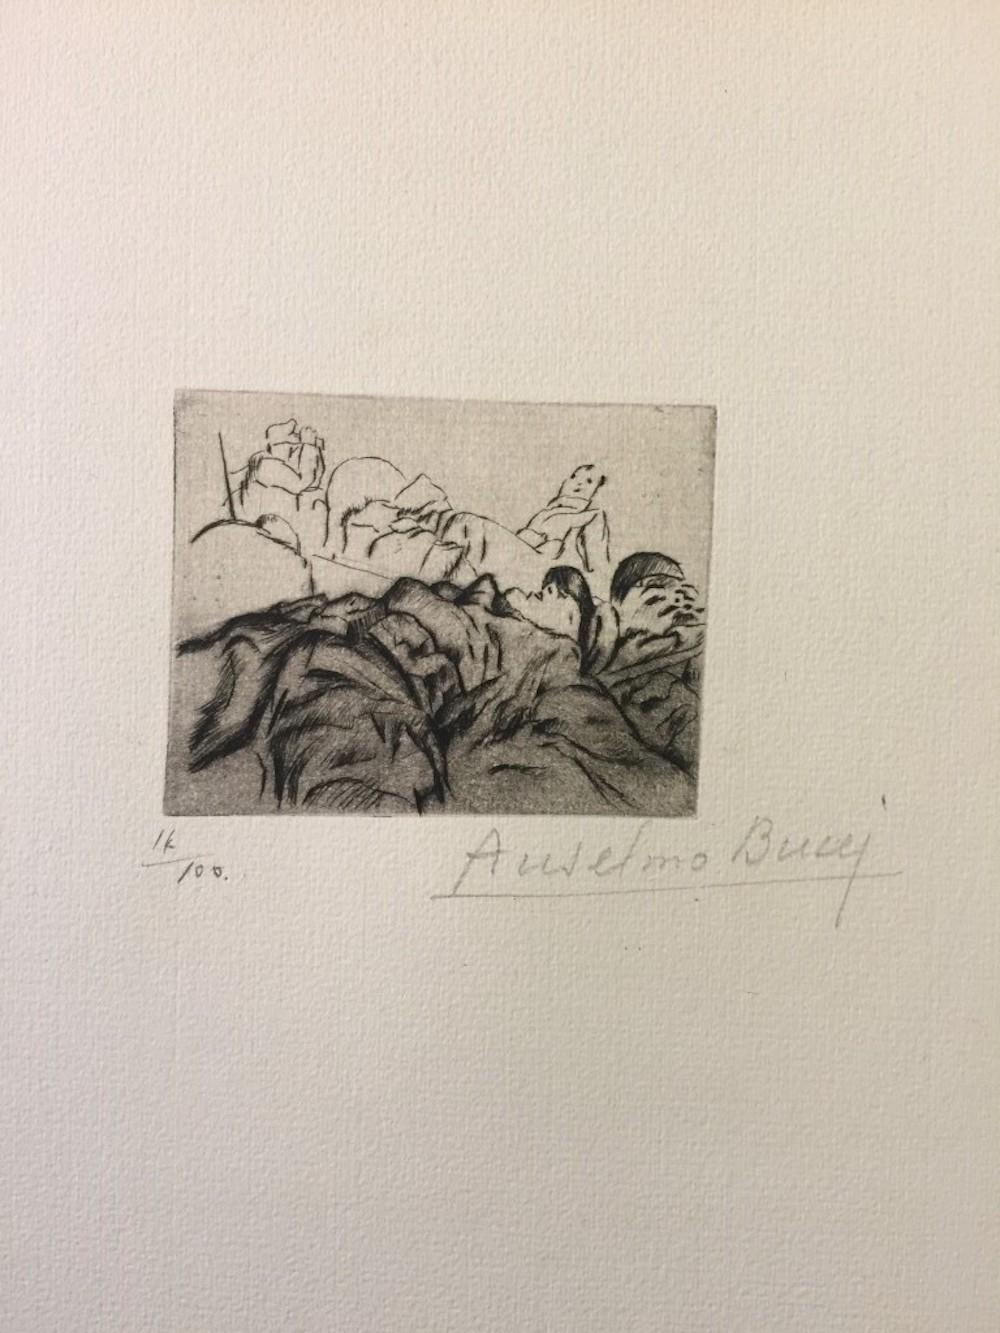 Abmessungen des Bildes: 6 x 8 cm.

Handsigniert. Auflage von 100 Drucken auf Hollande-Papier. Aus der Collection: "Croquis du Front Italien", erschienen in Paris bei D'Alignan editions. Anselmo Bucci war ein italienischer Maler und Grafiker.

Ab